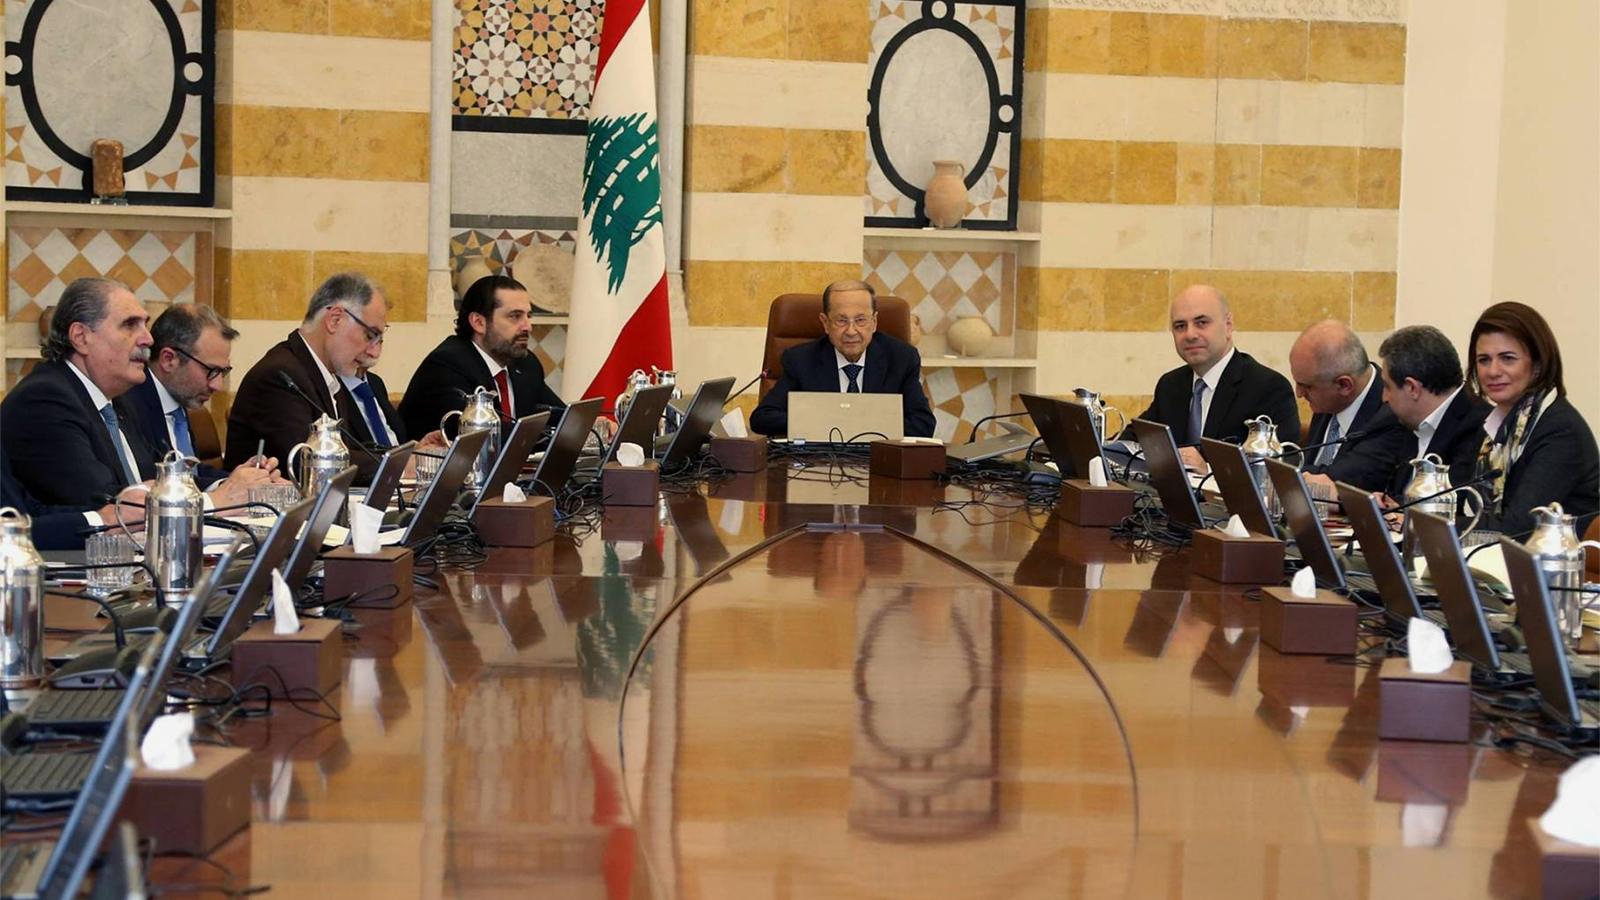 ‪الرئيس عون في اجتماع مع حكومة الحريري المستقيلة تحت وقع الاحتجاجات الشعبية‬ (الجزيرة-أرشيف)